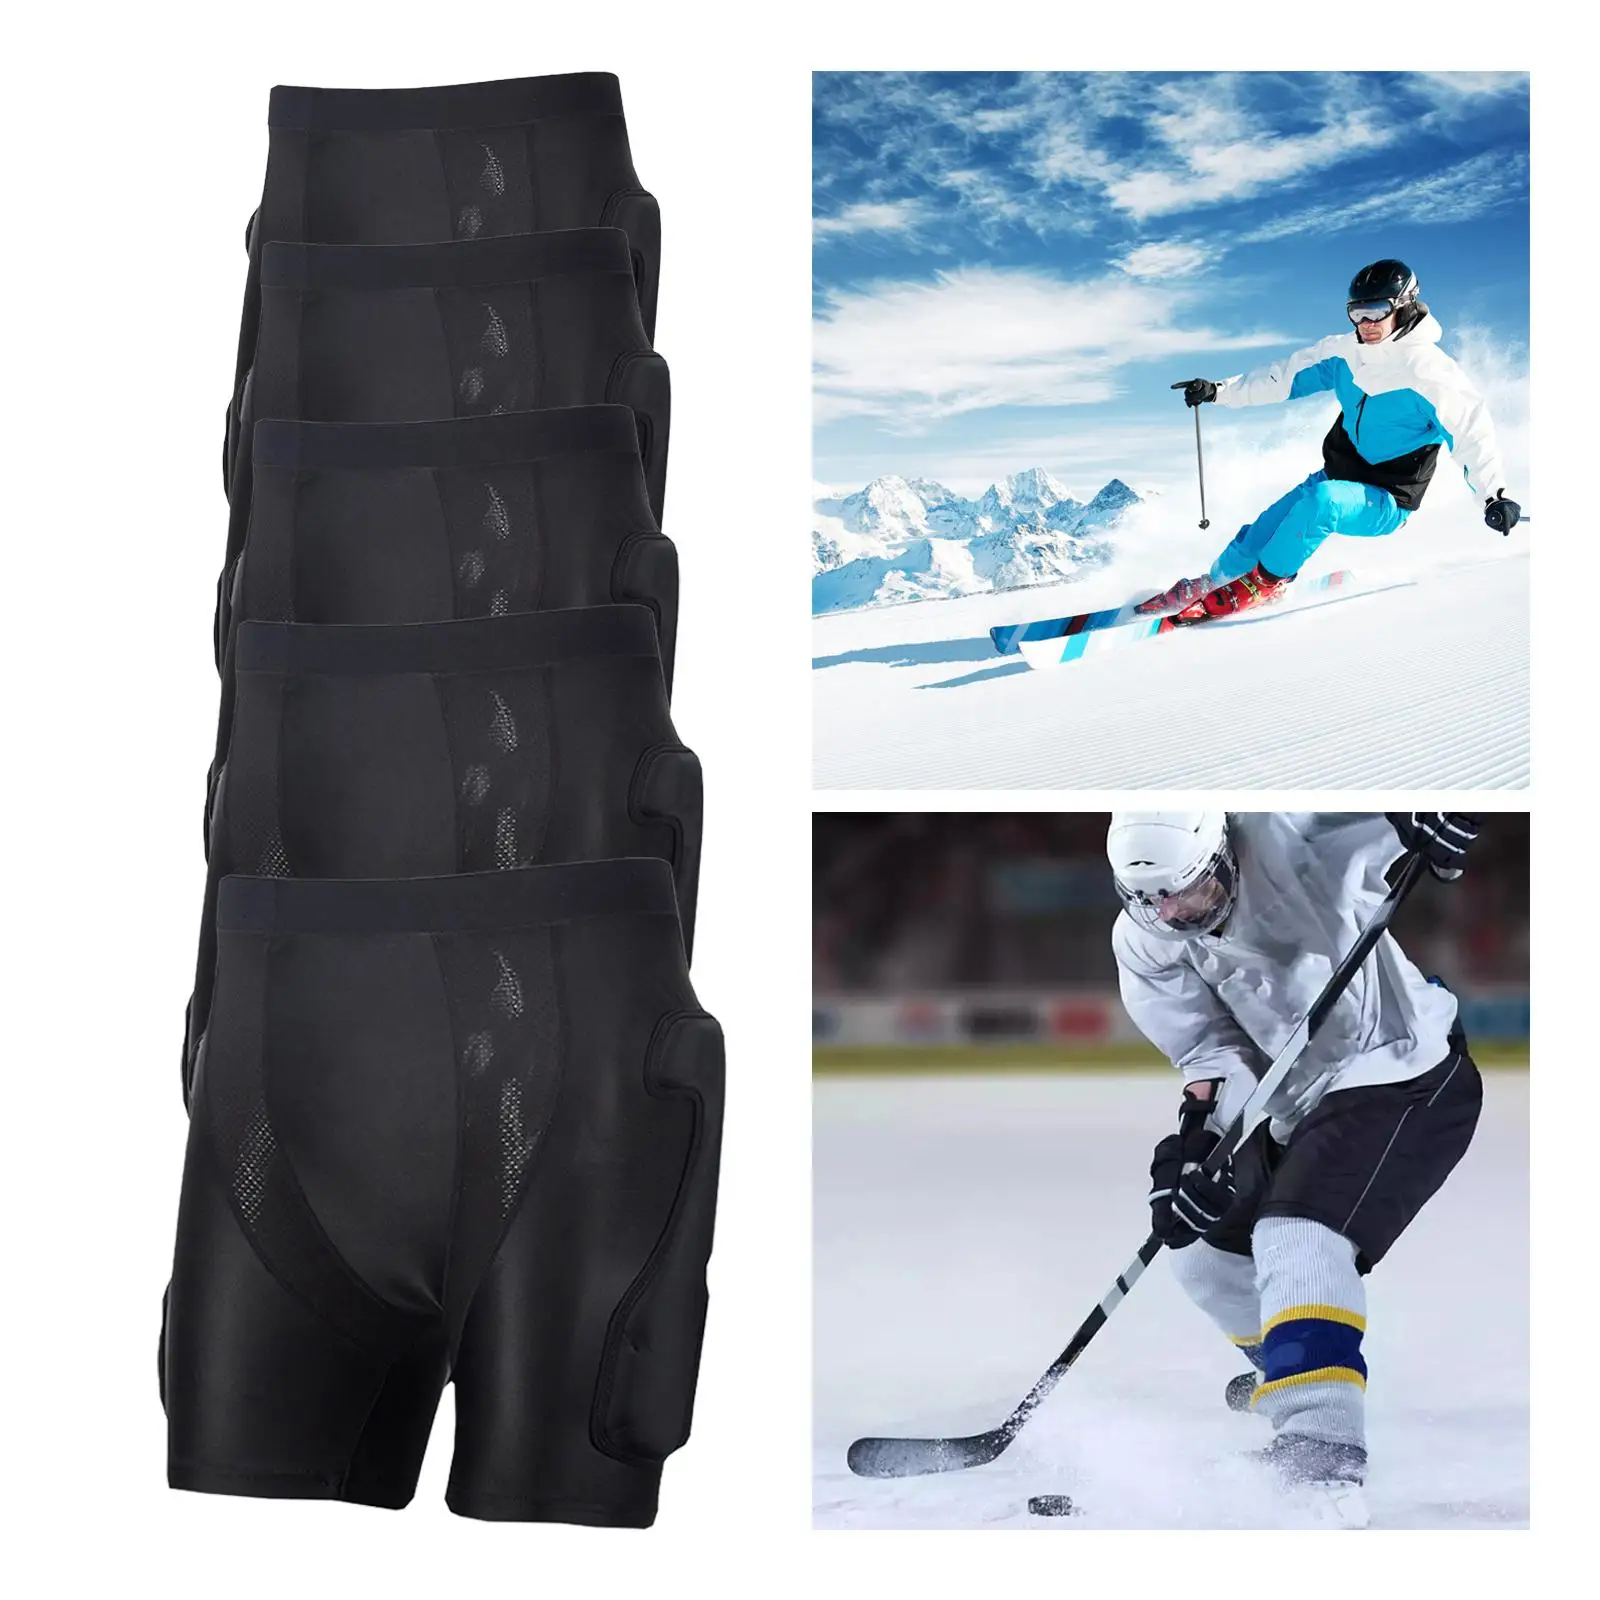 Protective Padded Shorts Skating Butt Pad Guard Pants 3D Impact Pad Pad for Ski Riding Roller Skating Snowboarding Winter Sports